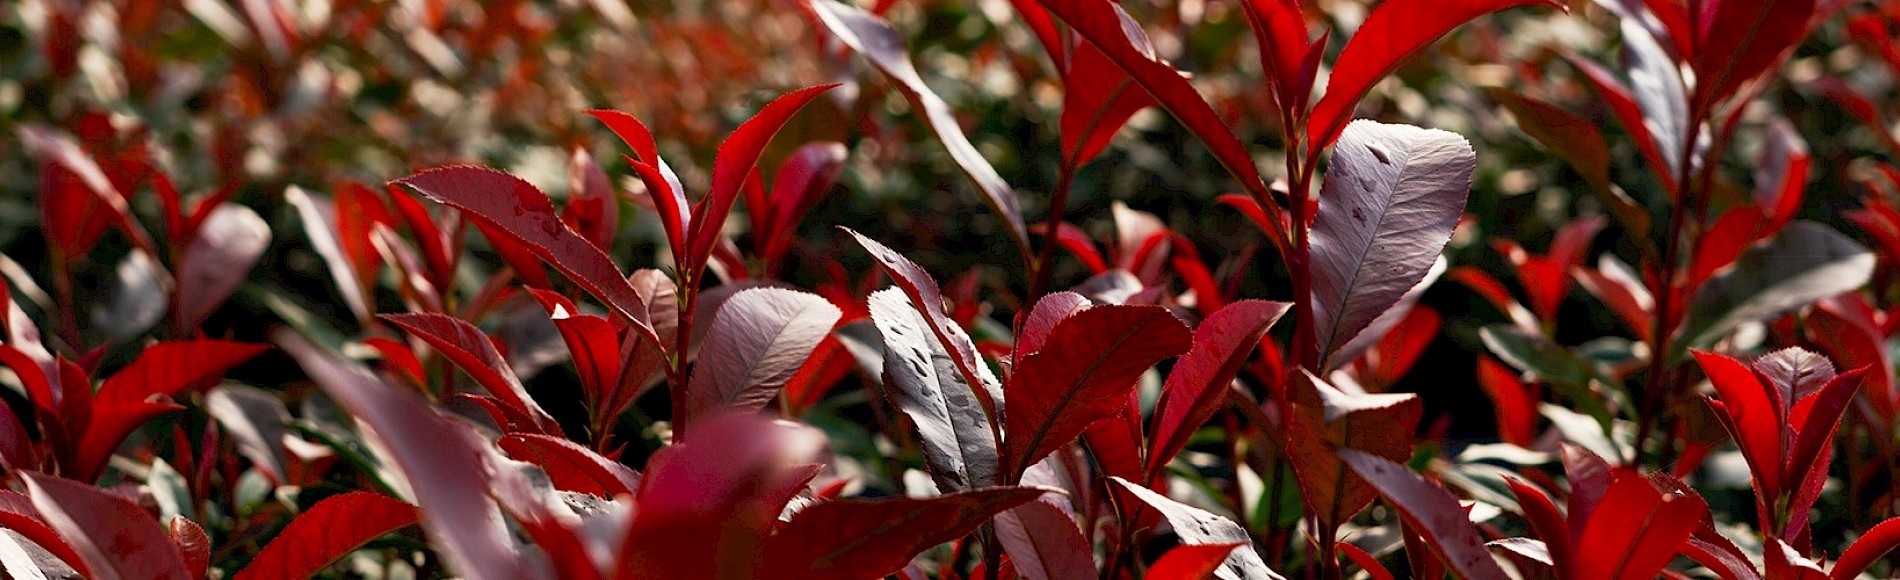 Rote Blätter der Devils Dream in Nahaufnahme